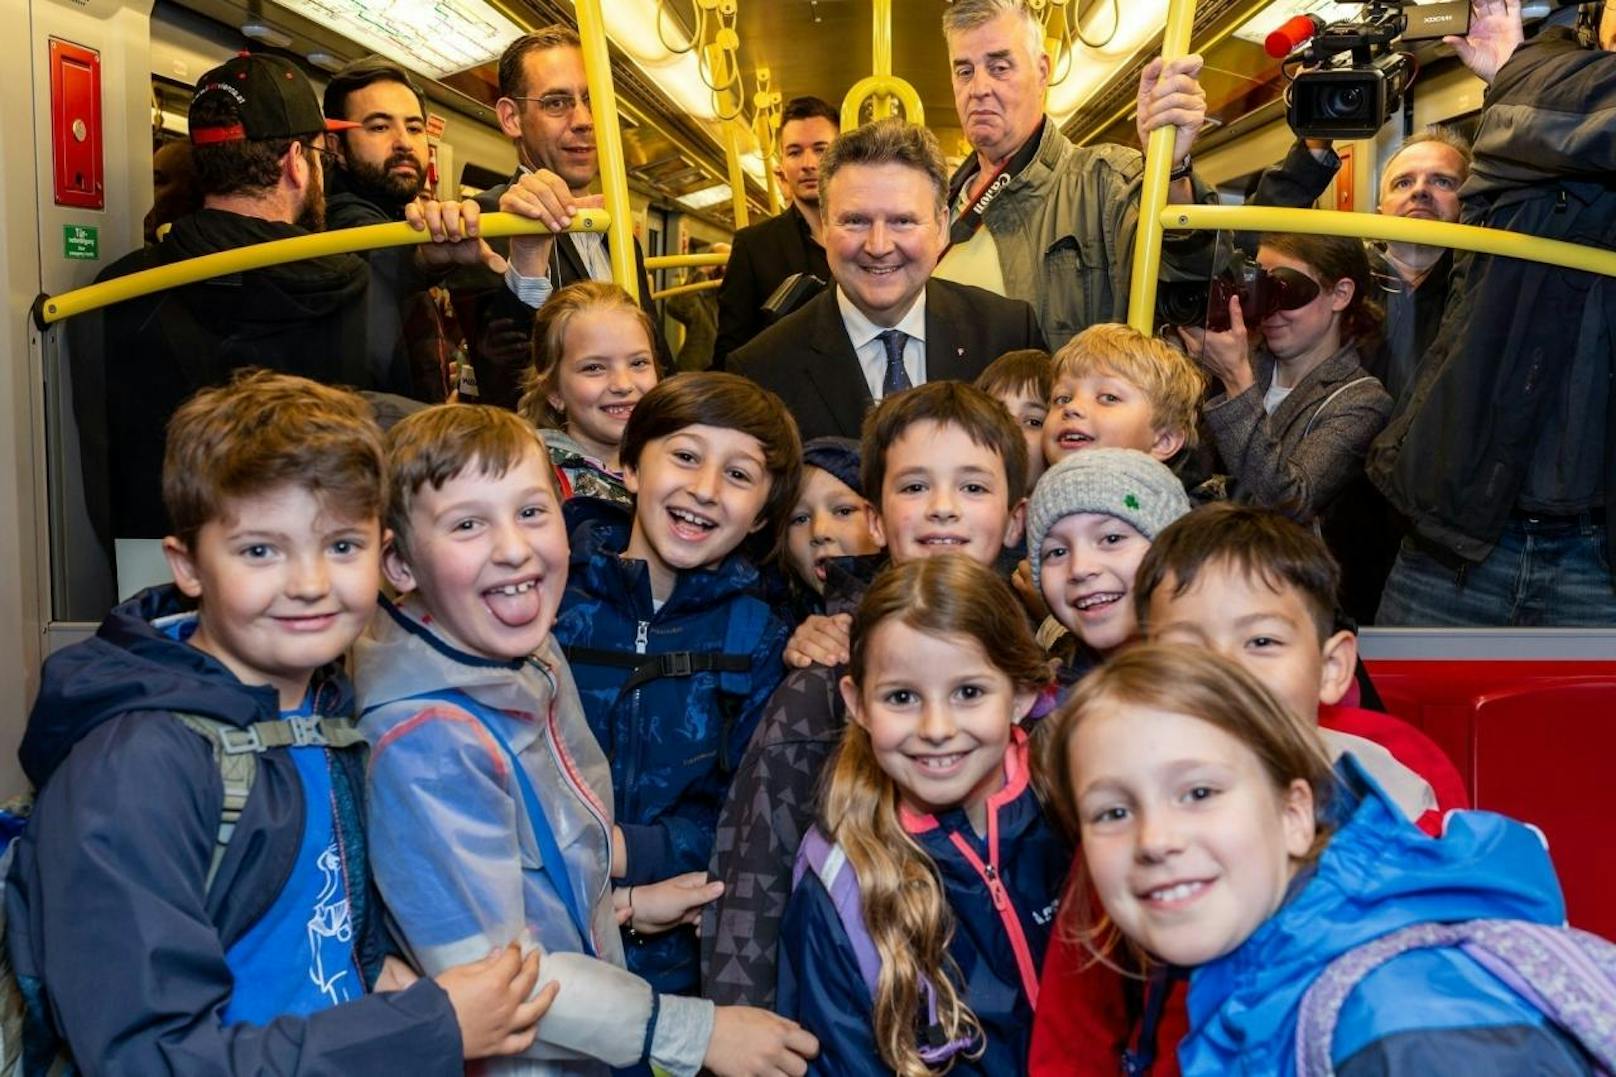 Eine Schülergruppe nutzte die U-Bahn-Fahrt Ludwigs für ein Foto mit dem neuen Bürgermeister.